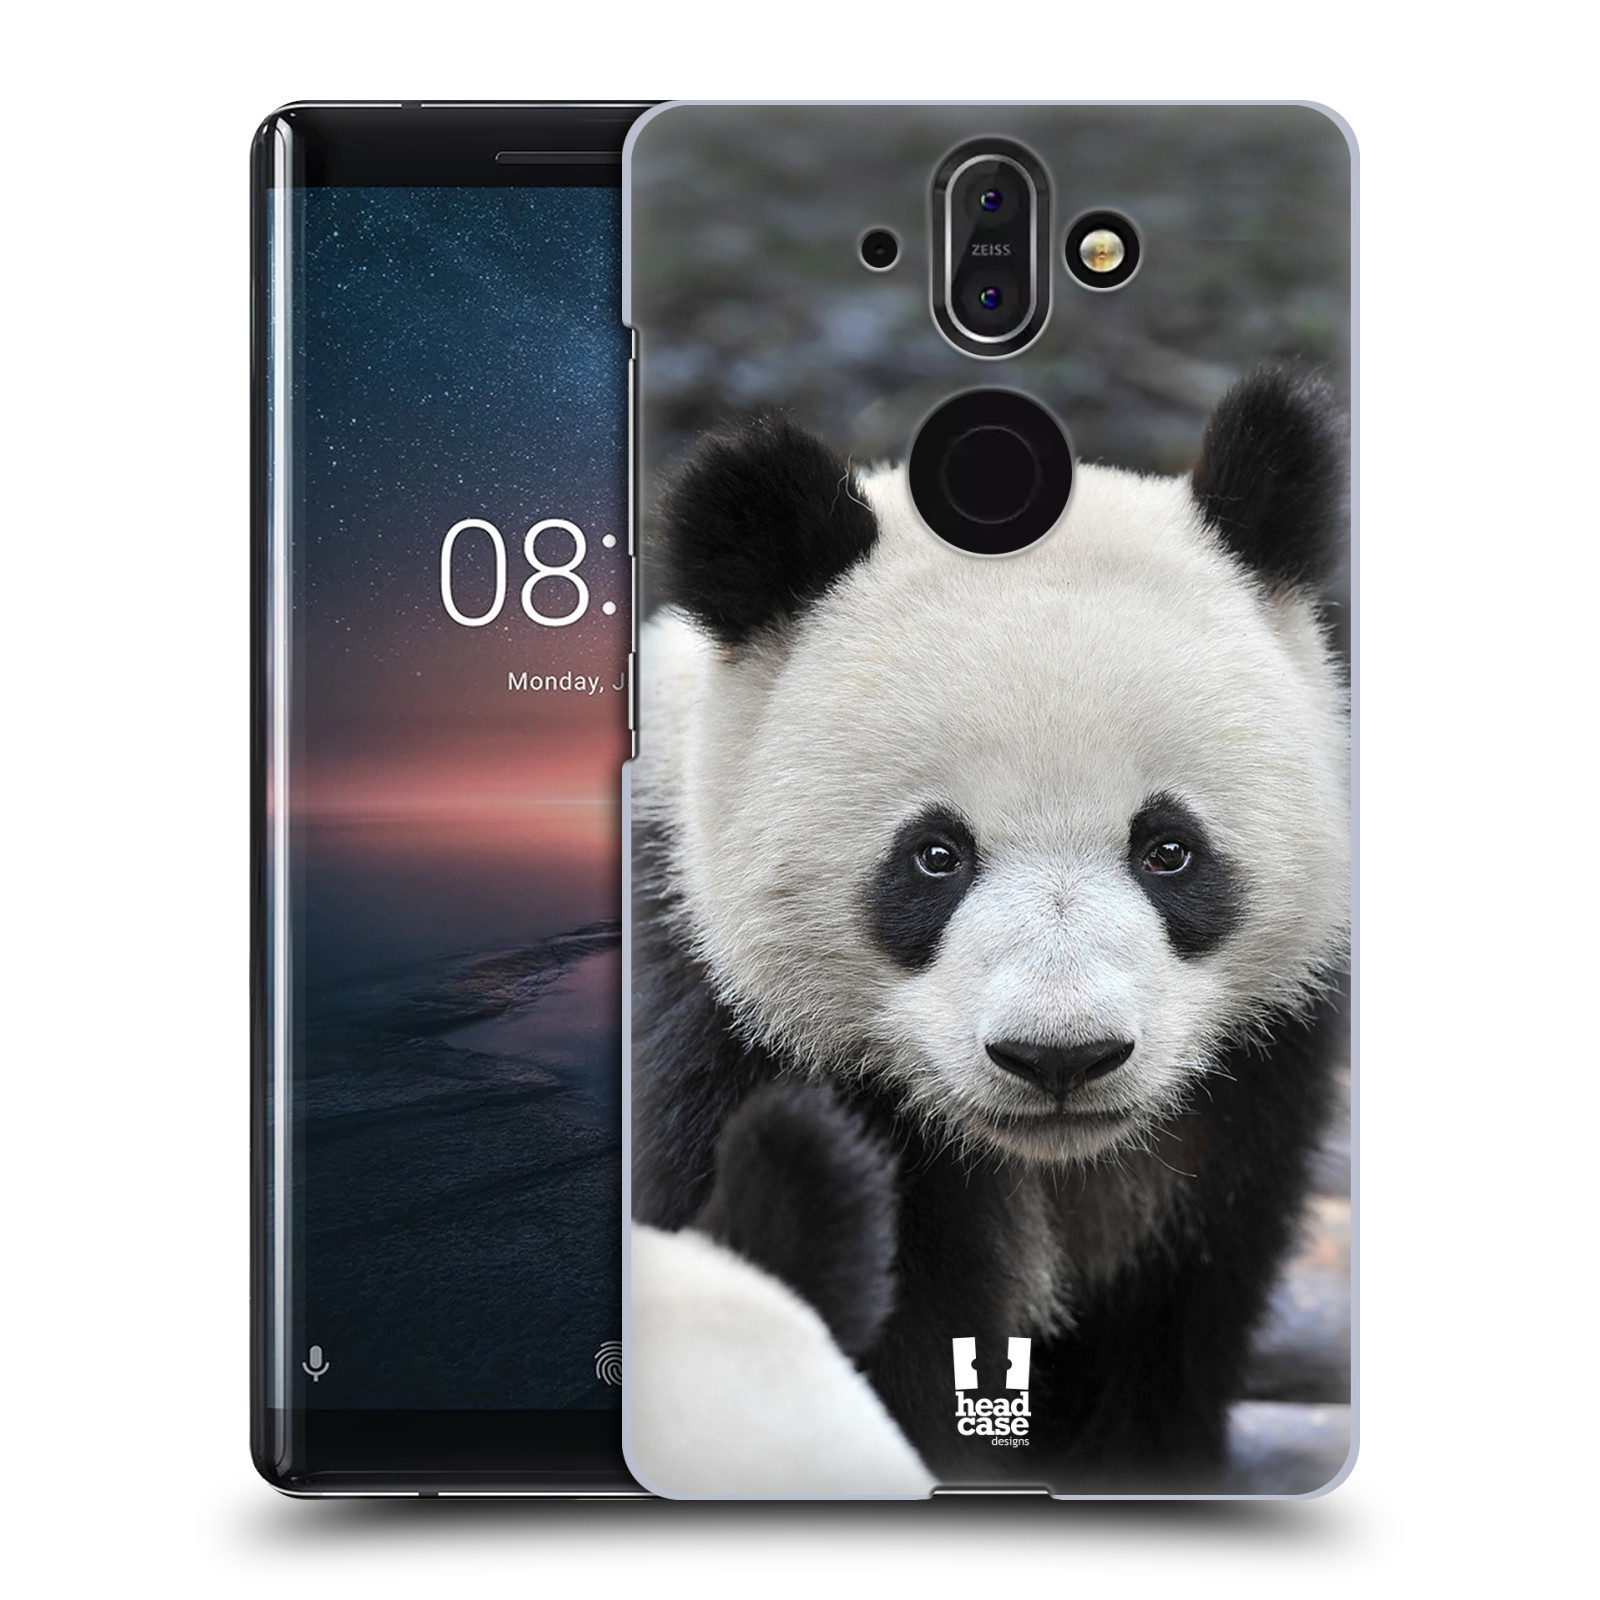 Zadní obal pro mobil Nokia 8 Sirocco - HEAD CASE - Svět zvířat medvěd panda